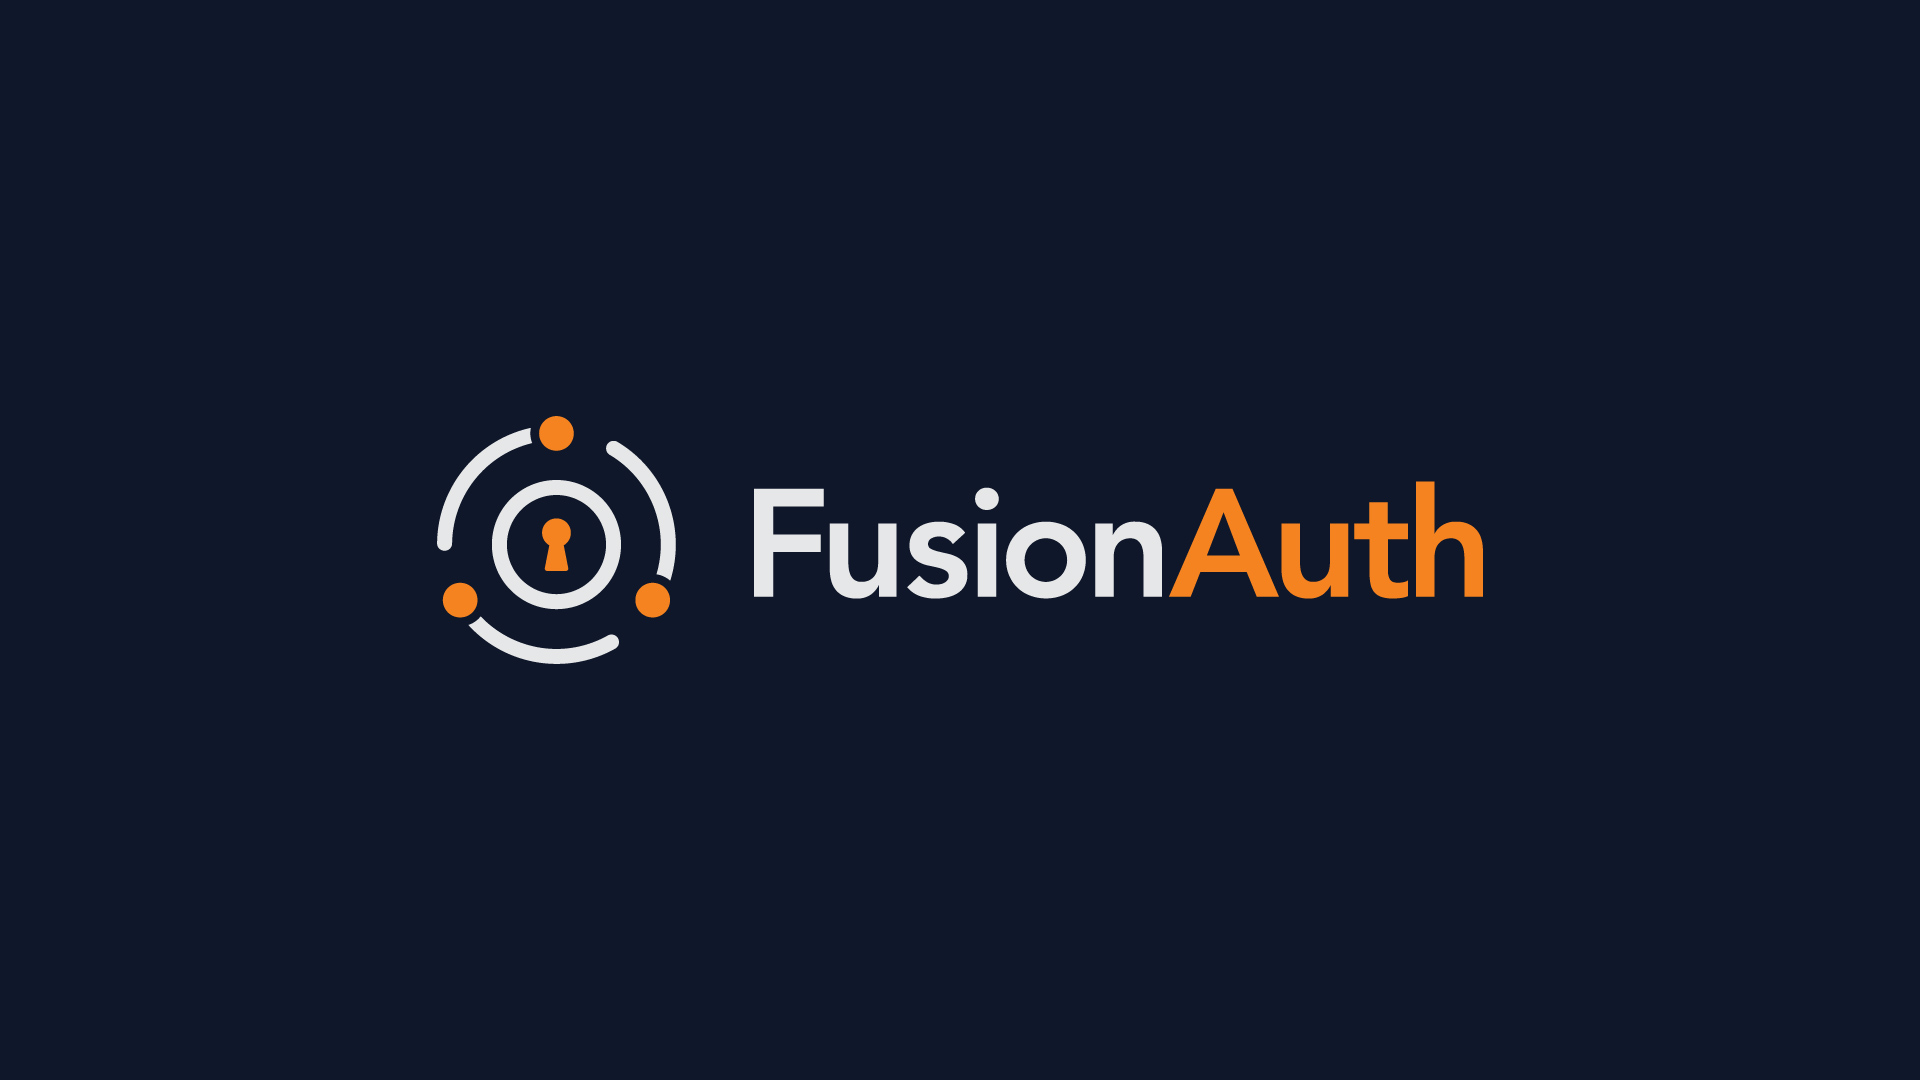 認証スタートアップのFusionAuth、初の外部ラウンドで6,500万ドルを調達